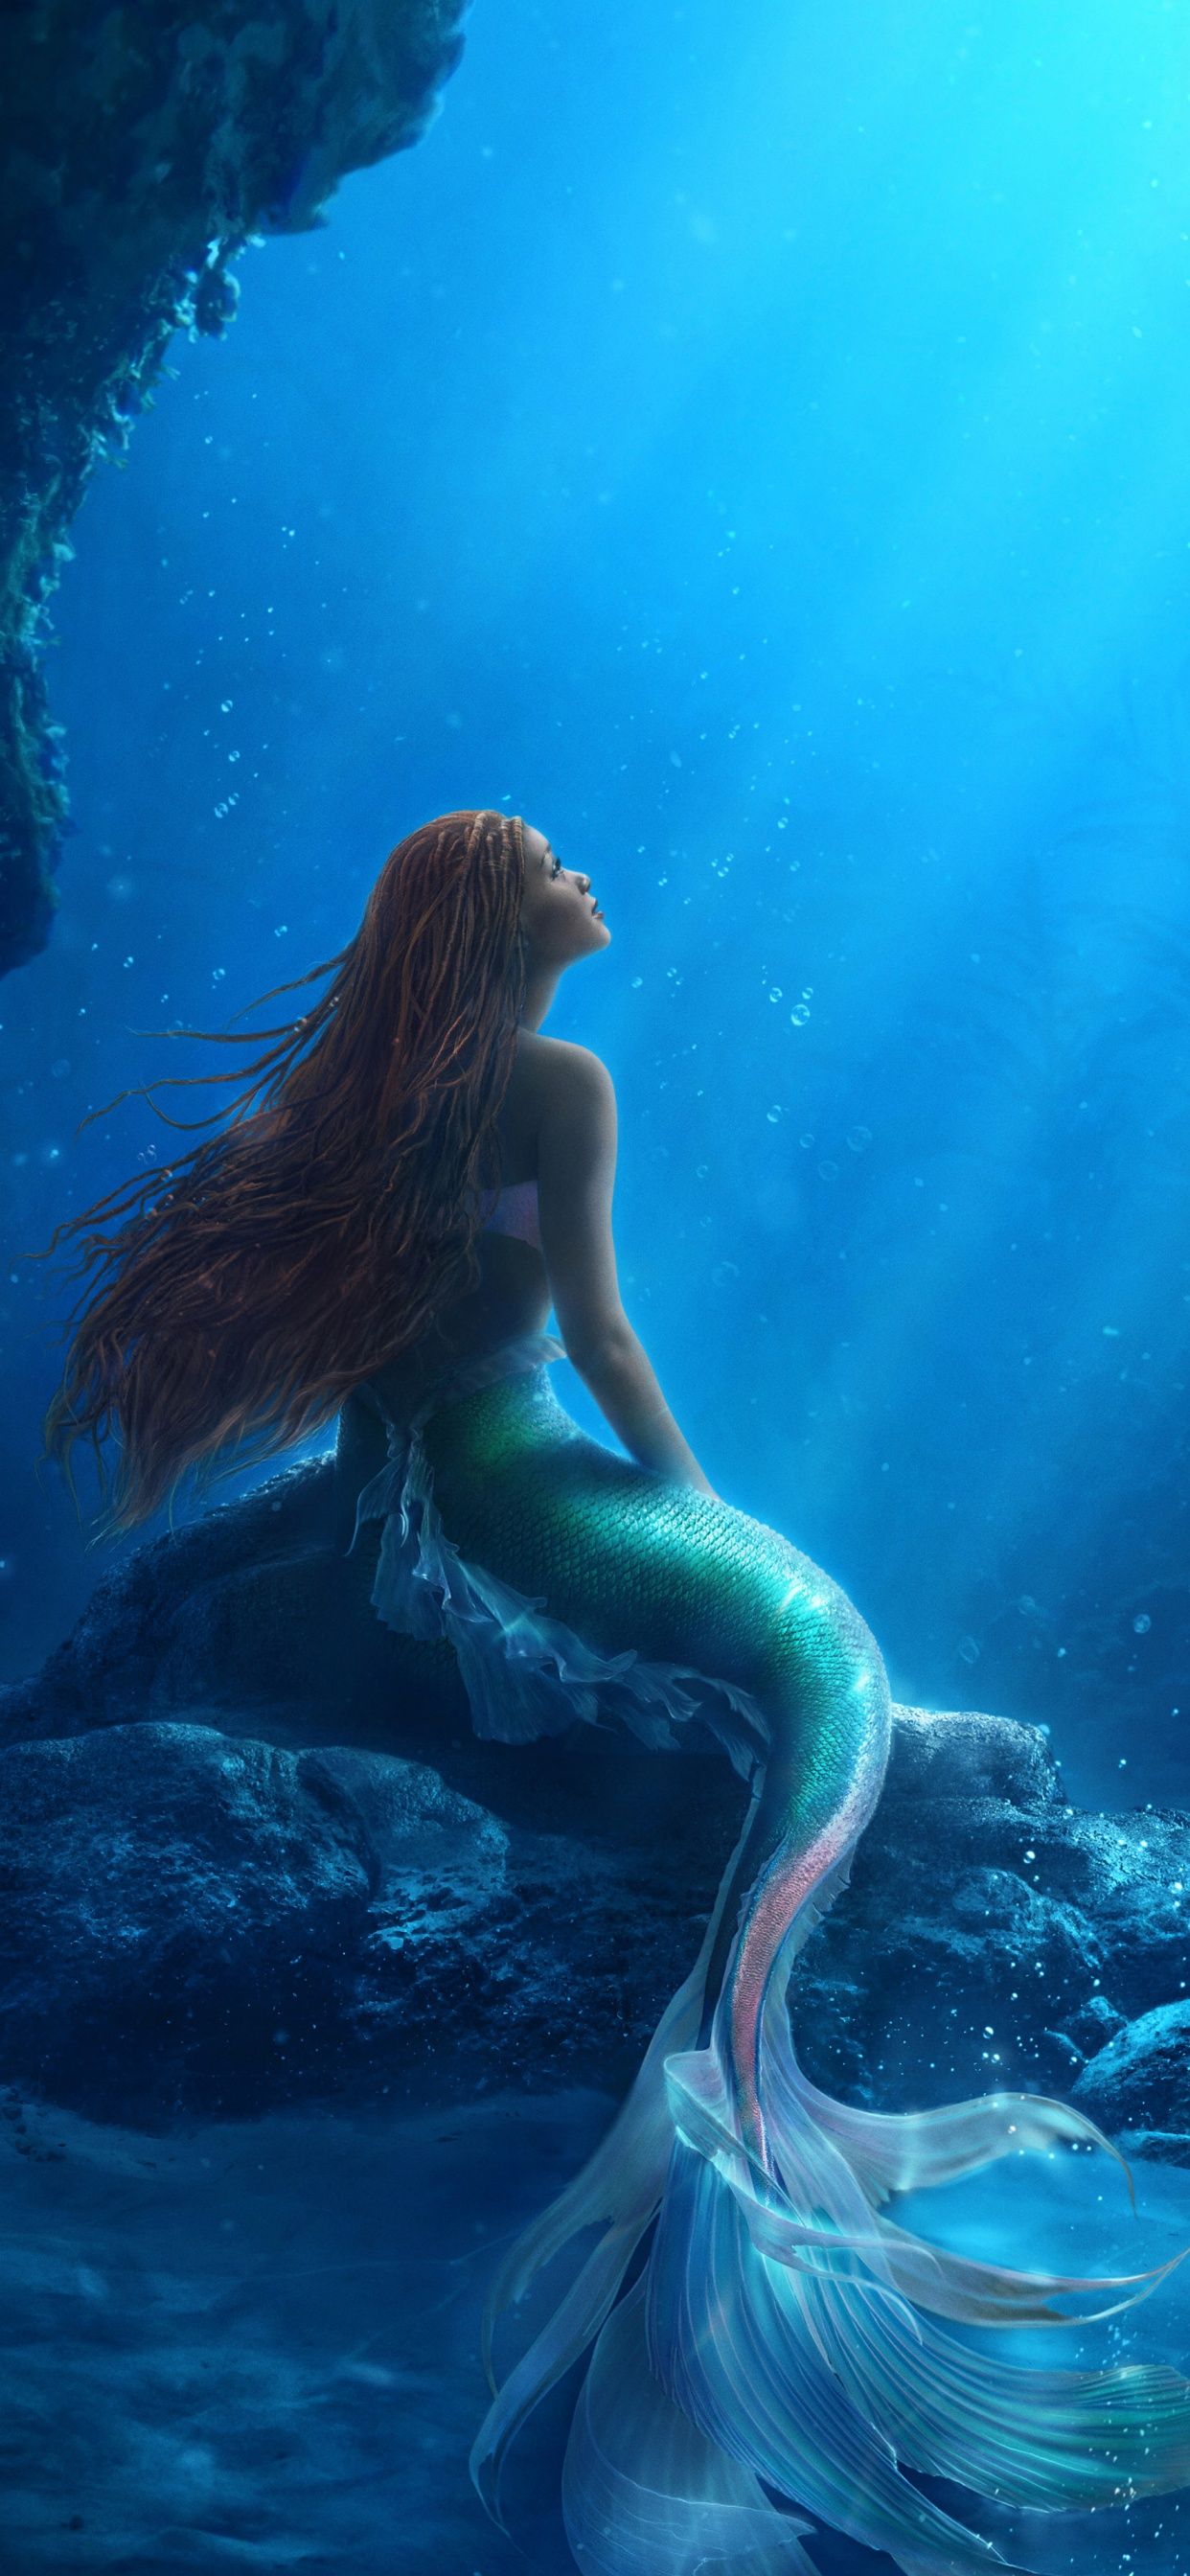 A mermaid sitting on the rocks in water - Mermaid